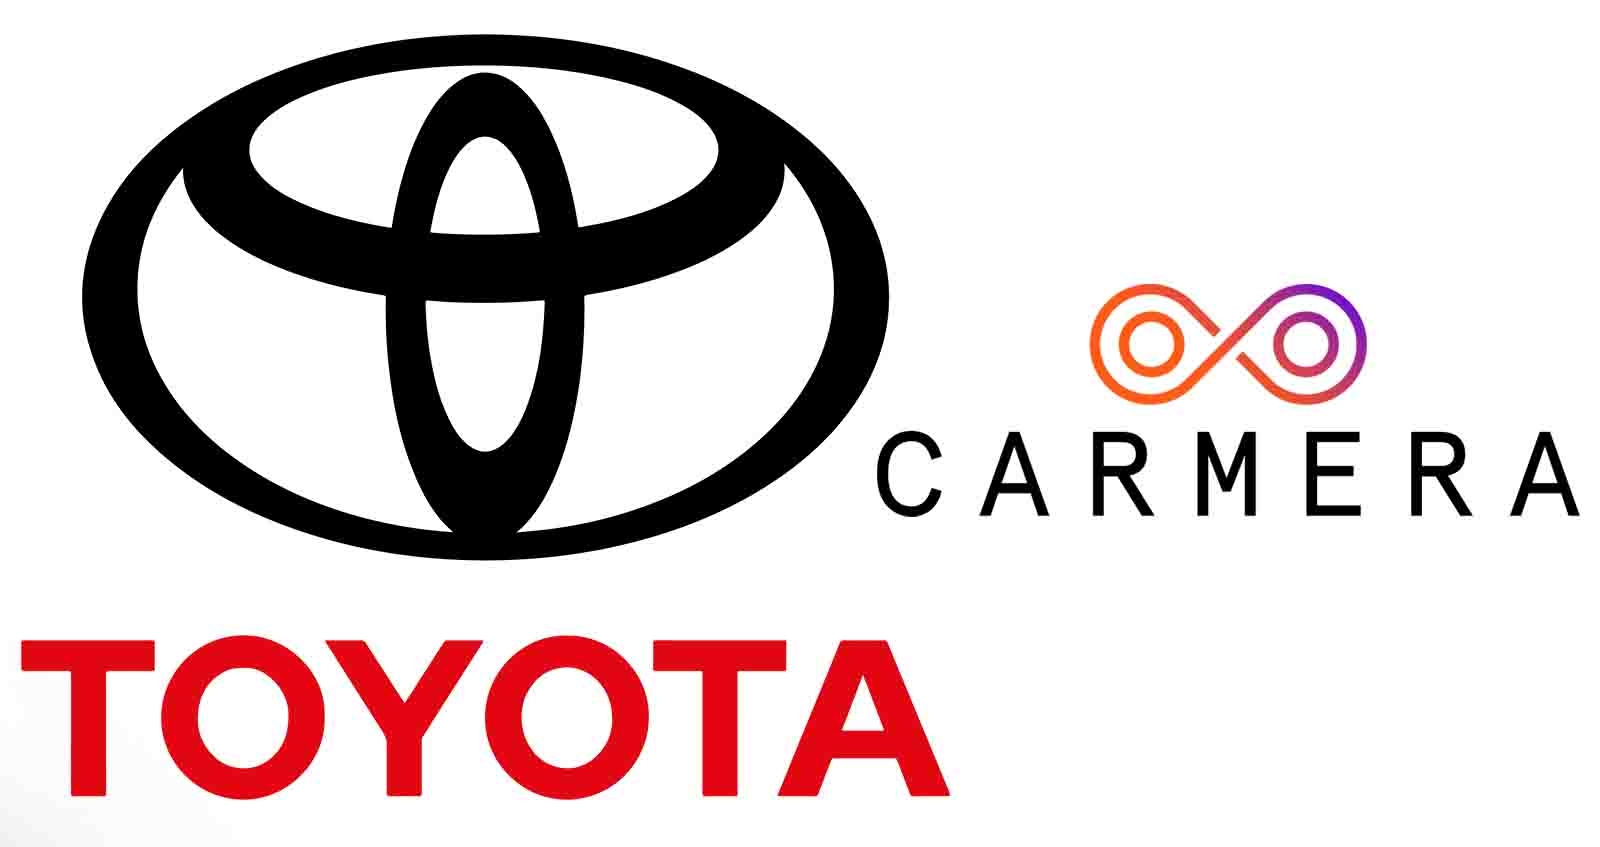 TOYOTA ซื้อกิจการ Carmera ผู้ให้บริการแผนที่ และ ข้อมูลสำหรับรถยนต์ไร้คนขับ ในสหรัฐฯ